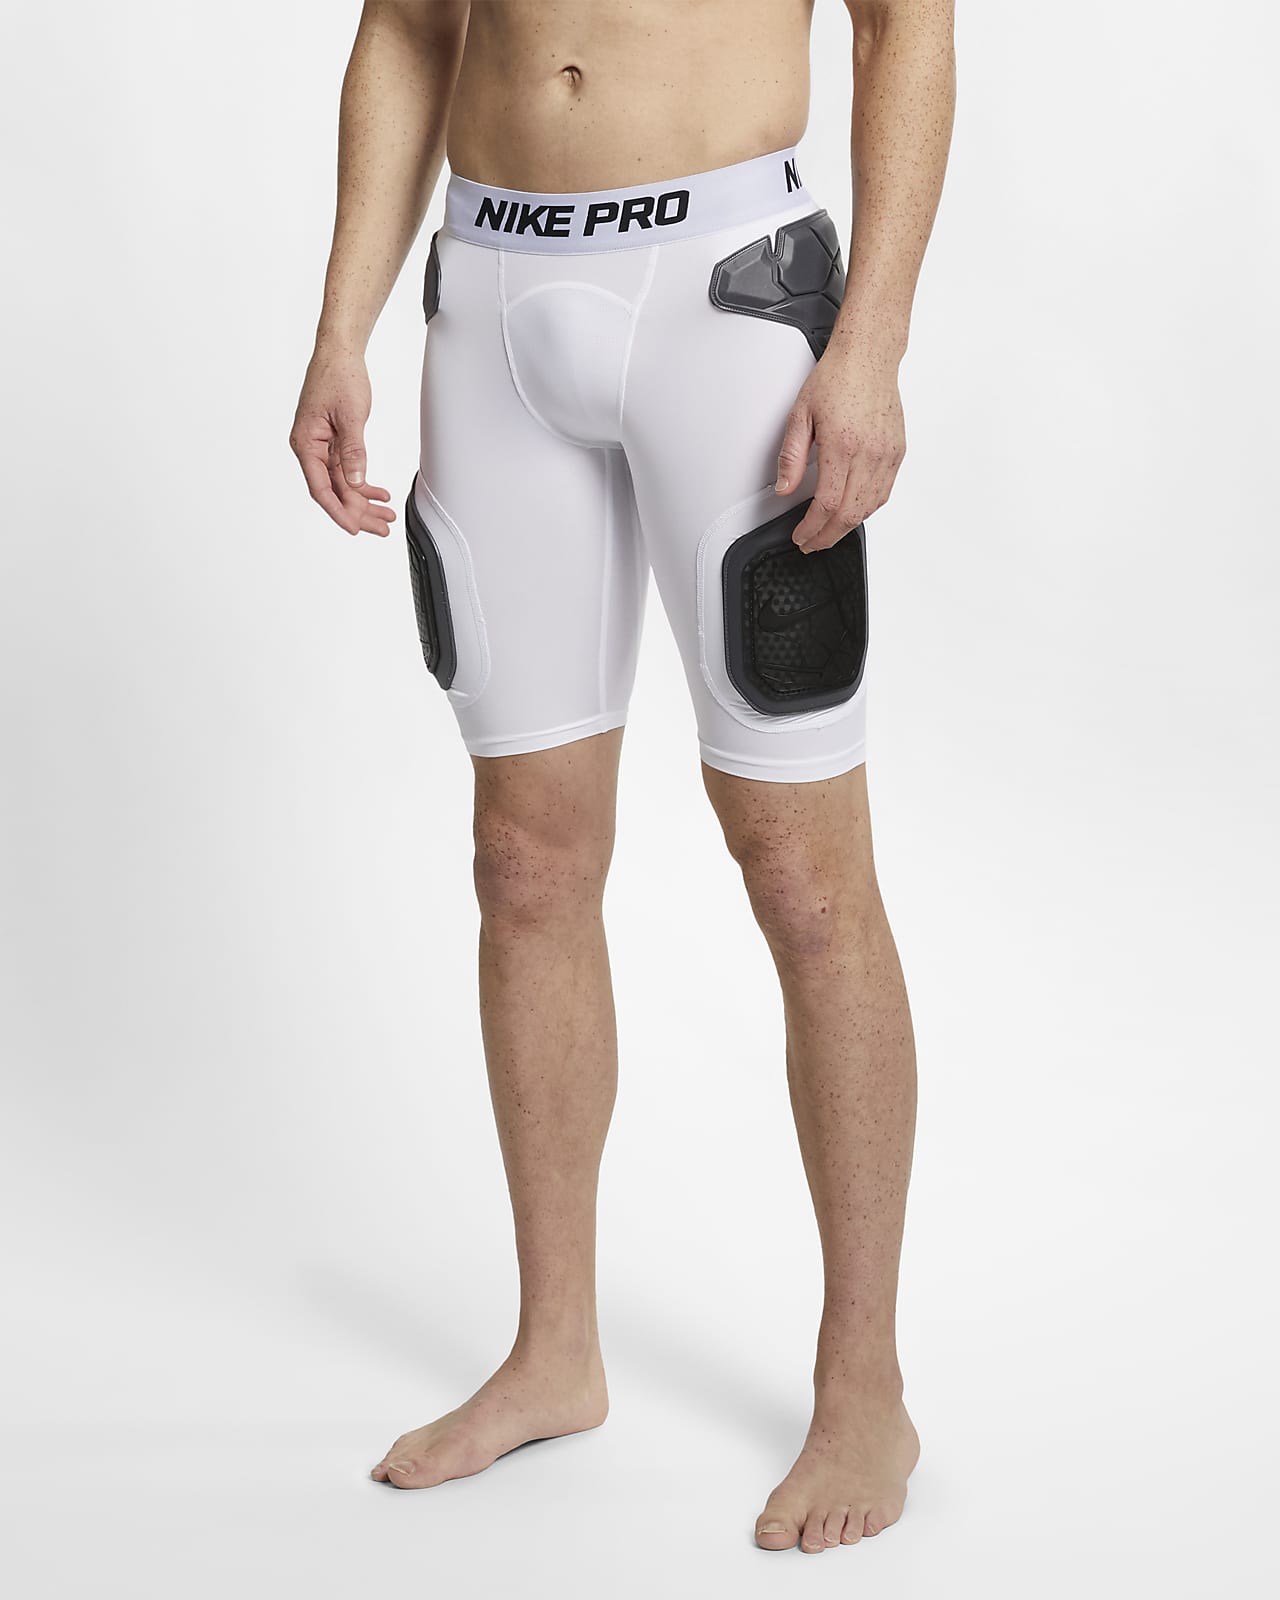 Nike Pro Men's Shorts.